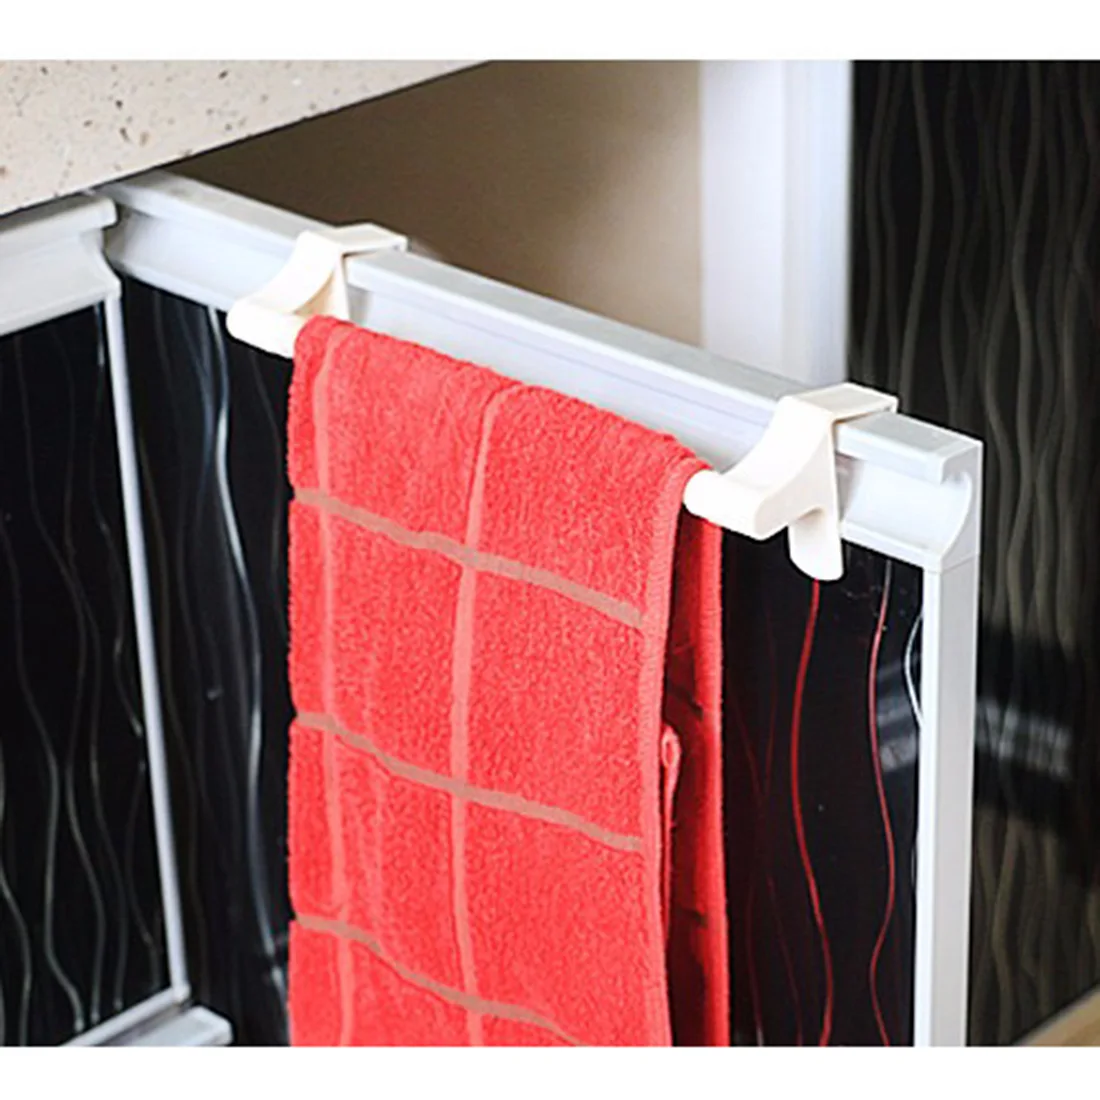 Кухонная стойка для хранения бумаги держатель для полотенец рулон ткани вешалка под шкаф кухонная вешалка для полотенец для ванной комнаты вешалка для полотенец